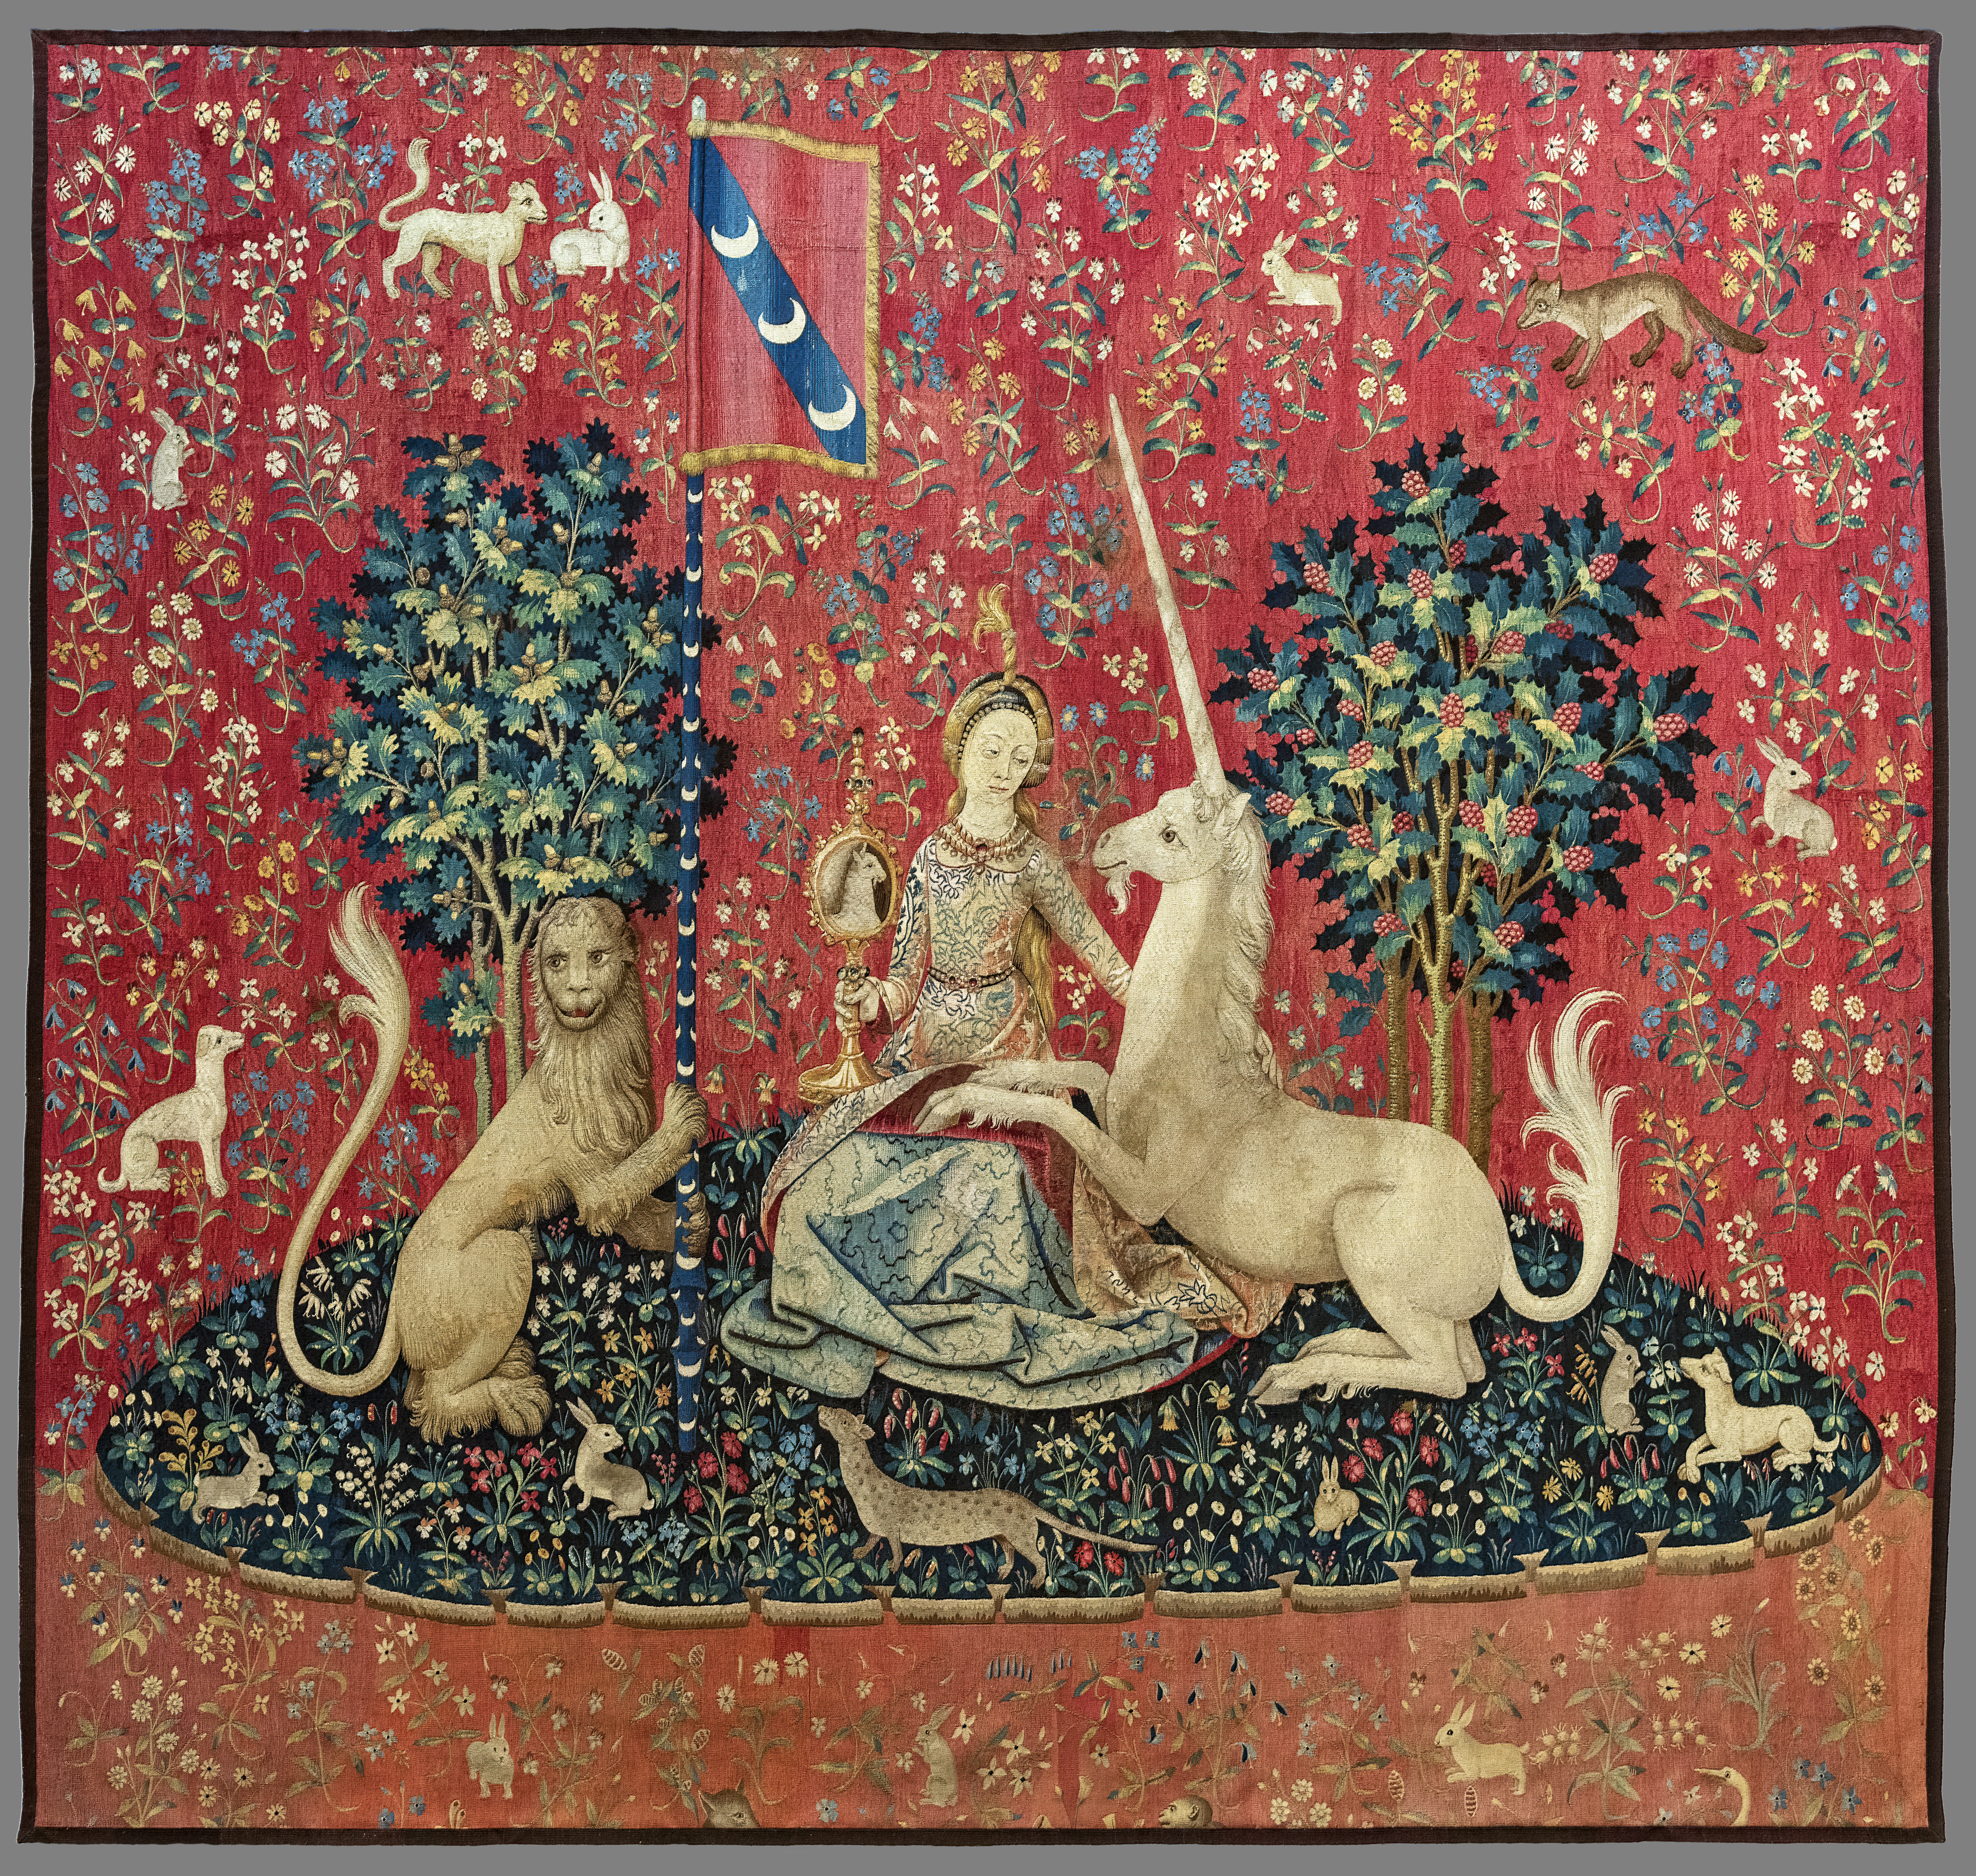 (Toulouse) Le Vue (La Dame à la licorne) - Musée de Cluny Paris